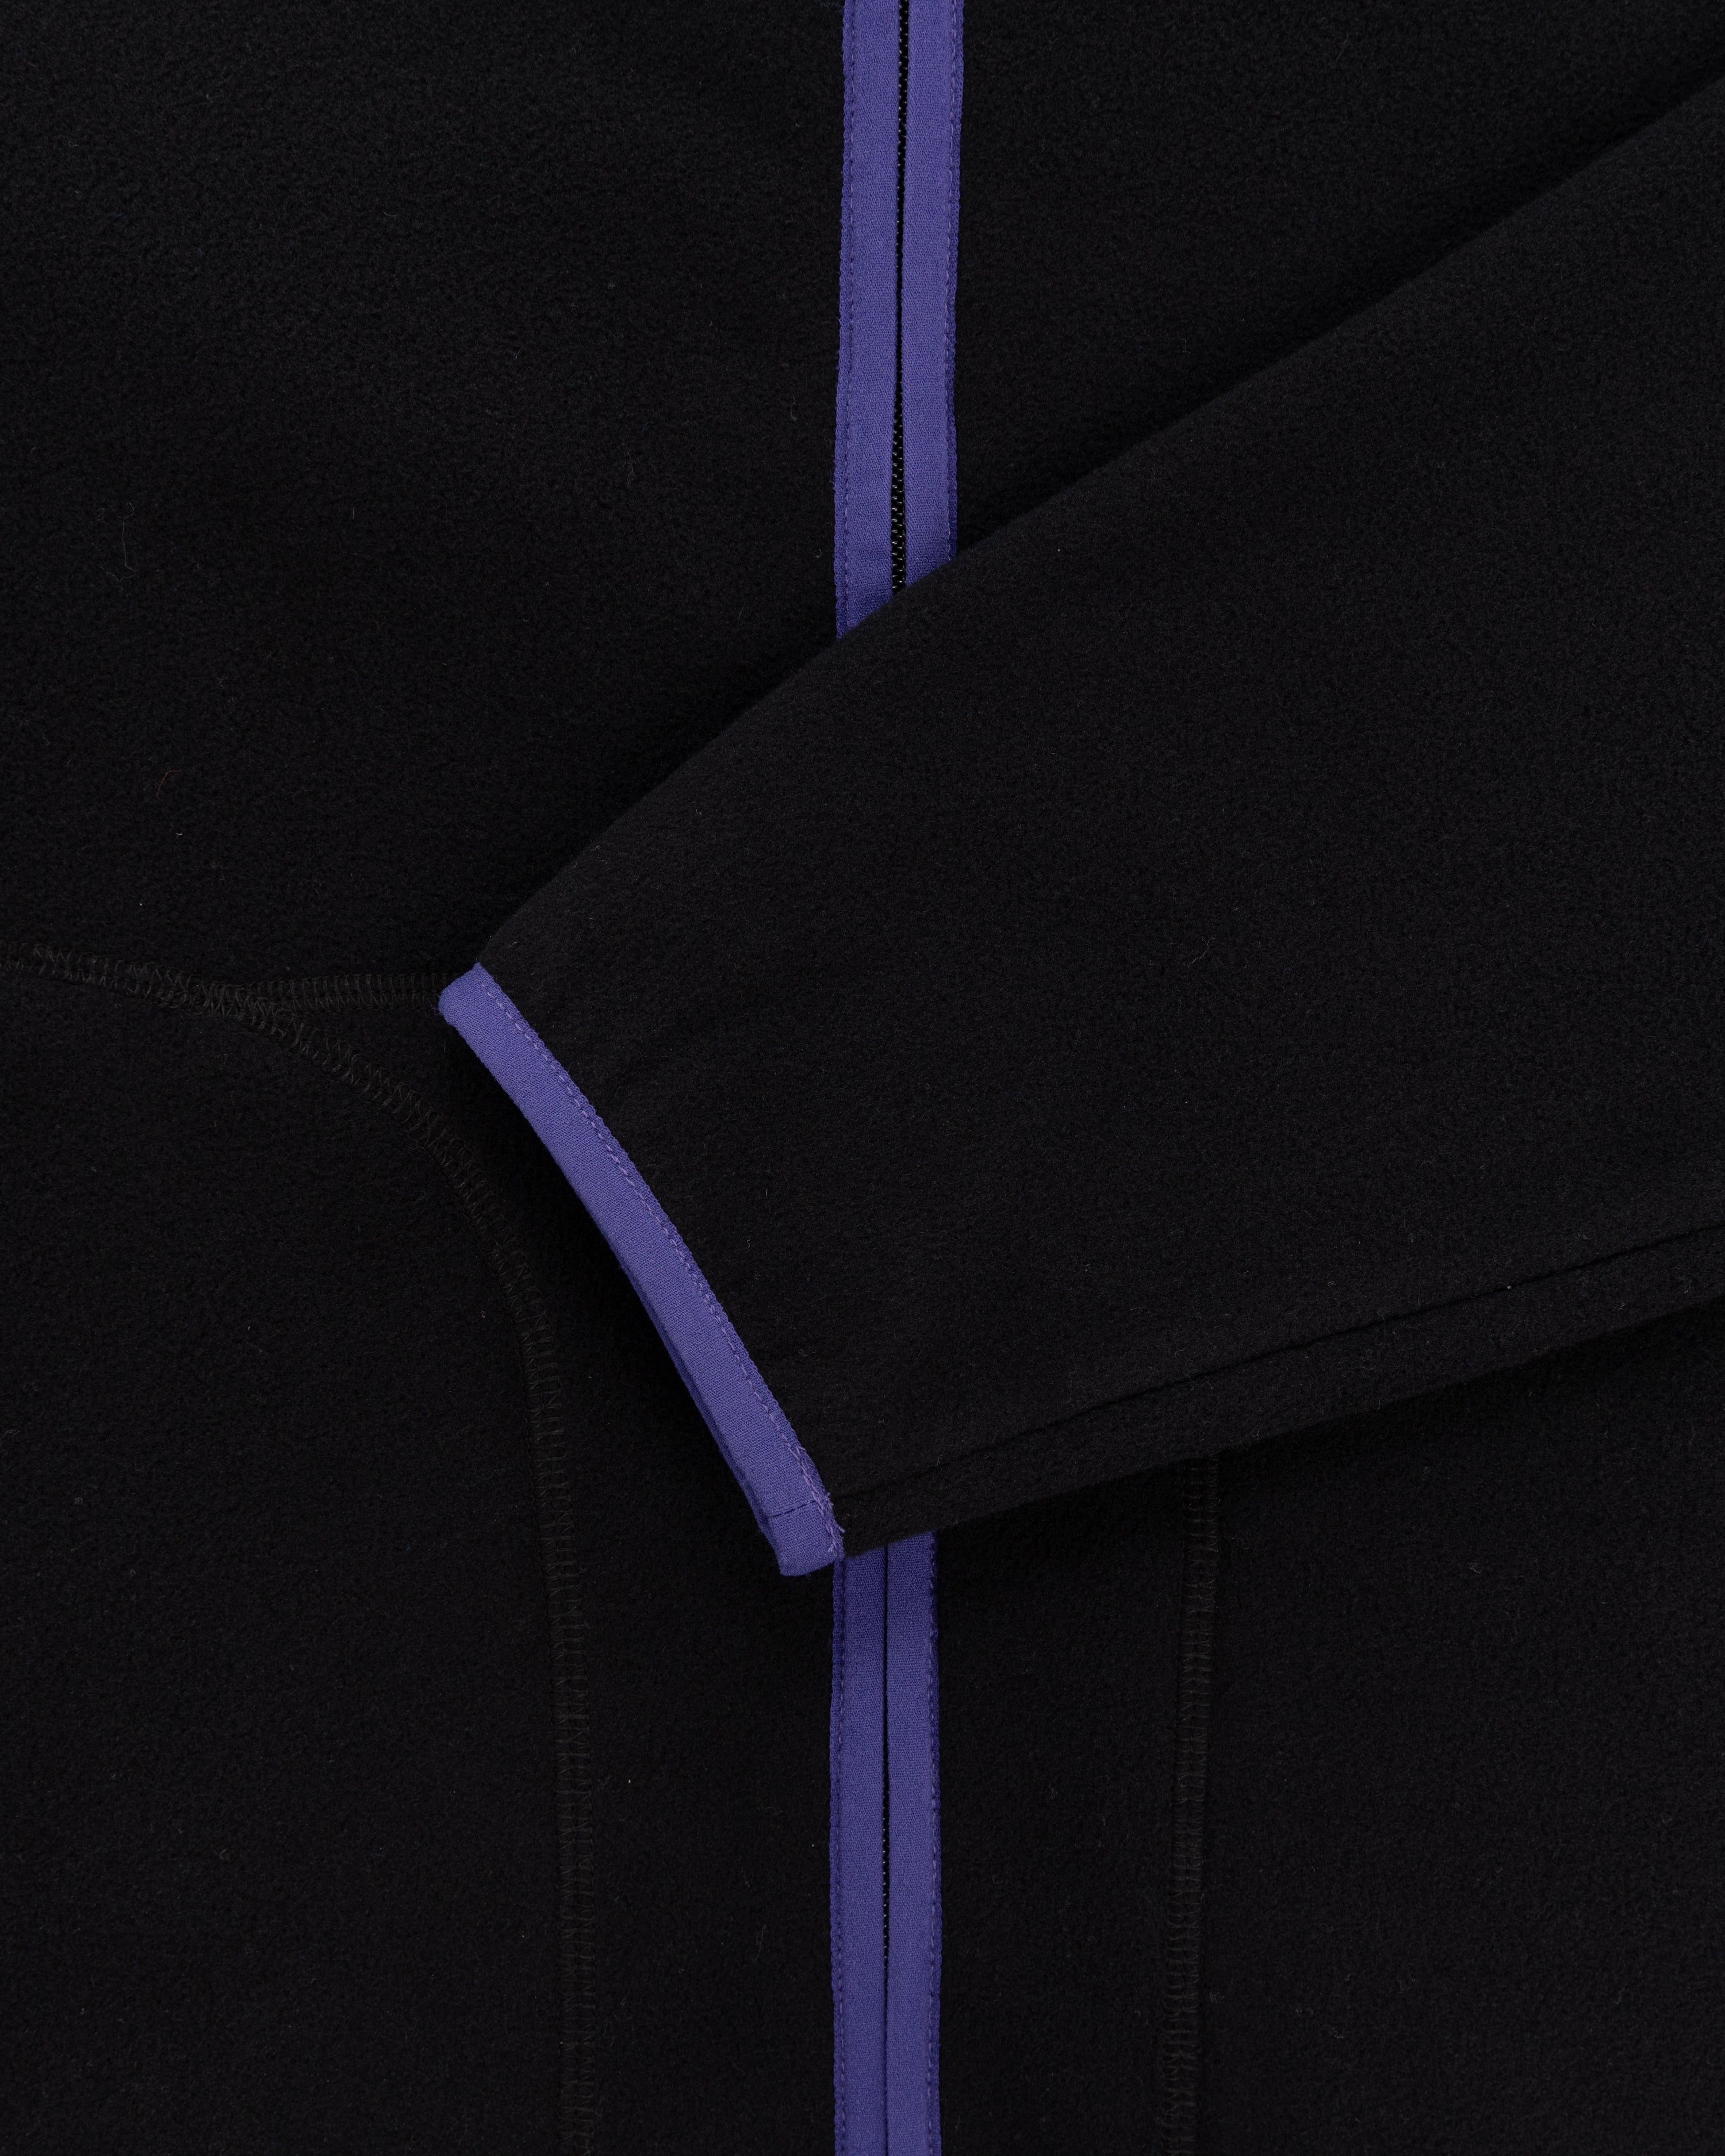 Lightweight Full-Zip Fleece Jacket